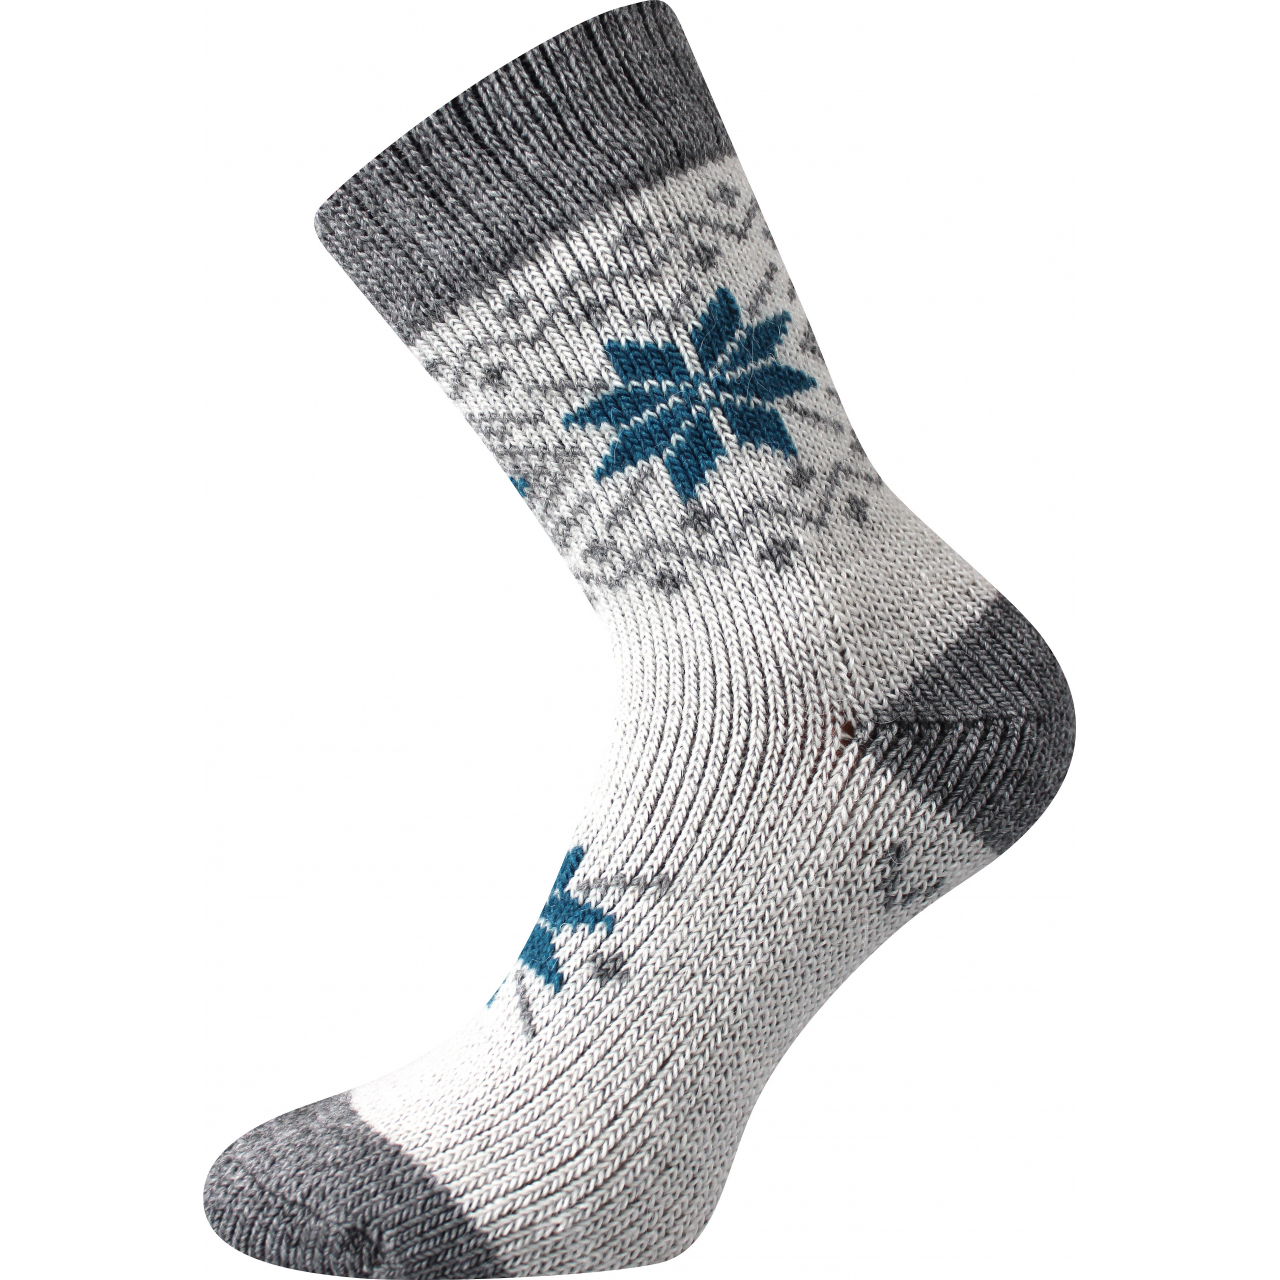 Ponožky unisex vlněné Voxx Alta - bílé-šedé, 43-46